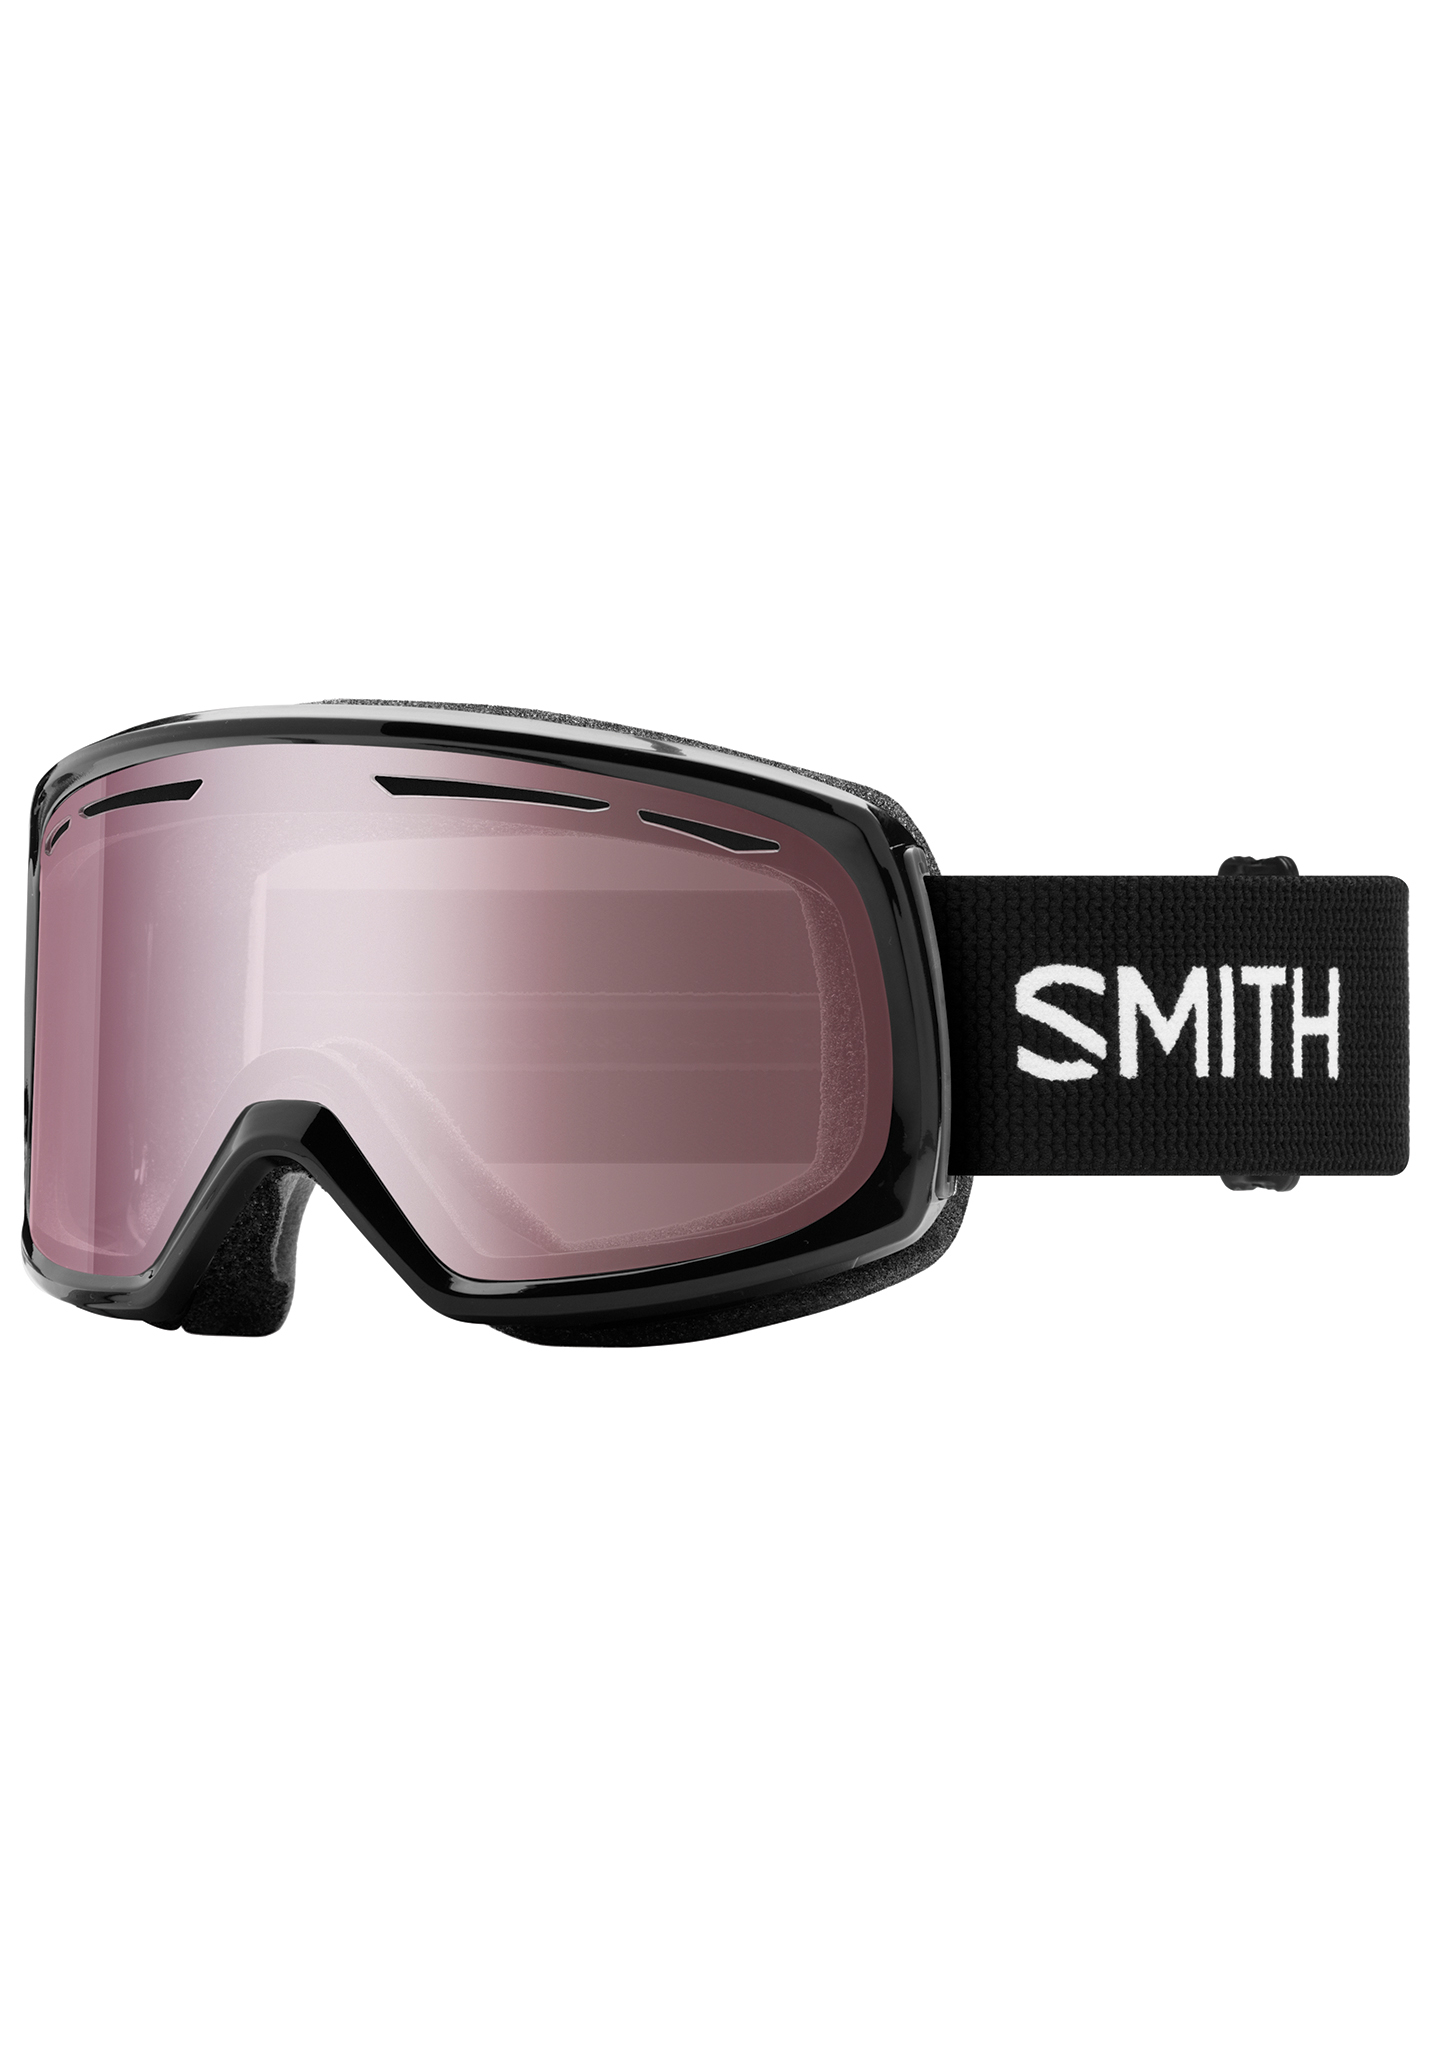 Smith Drift Snowboardbrillen schwarz/ignitorischer spiegel One Size